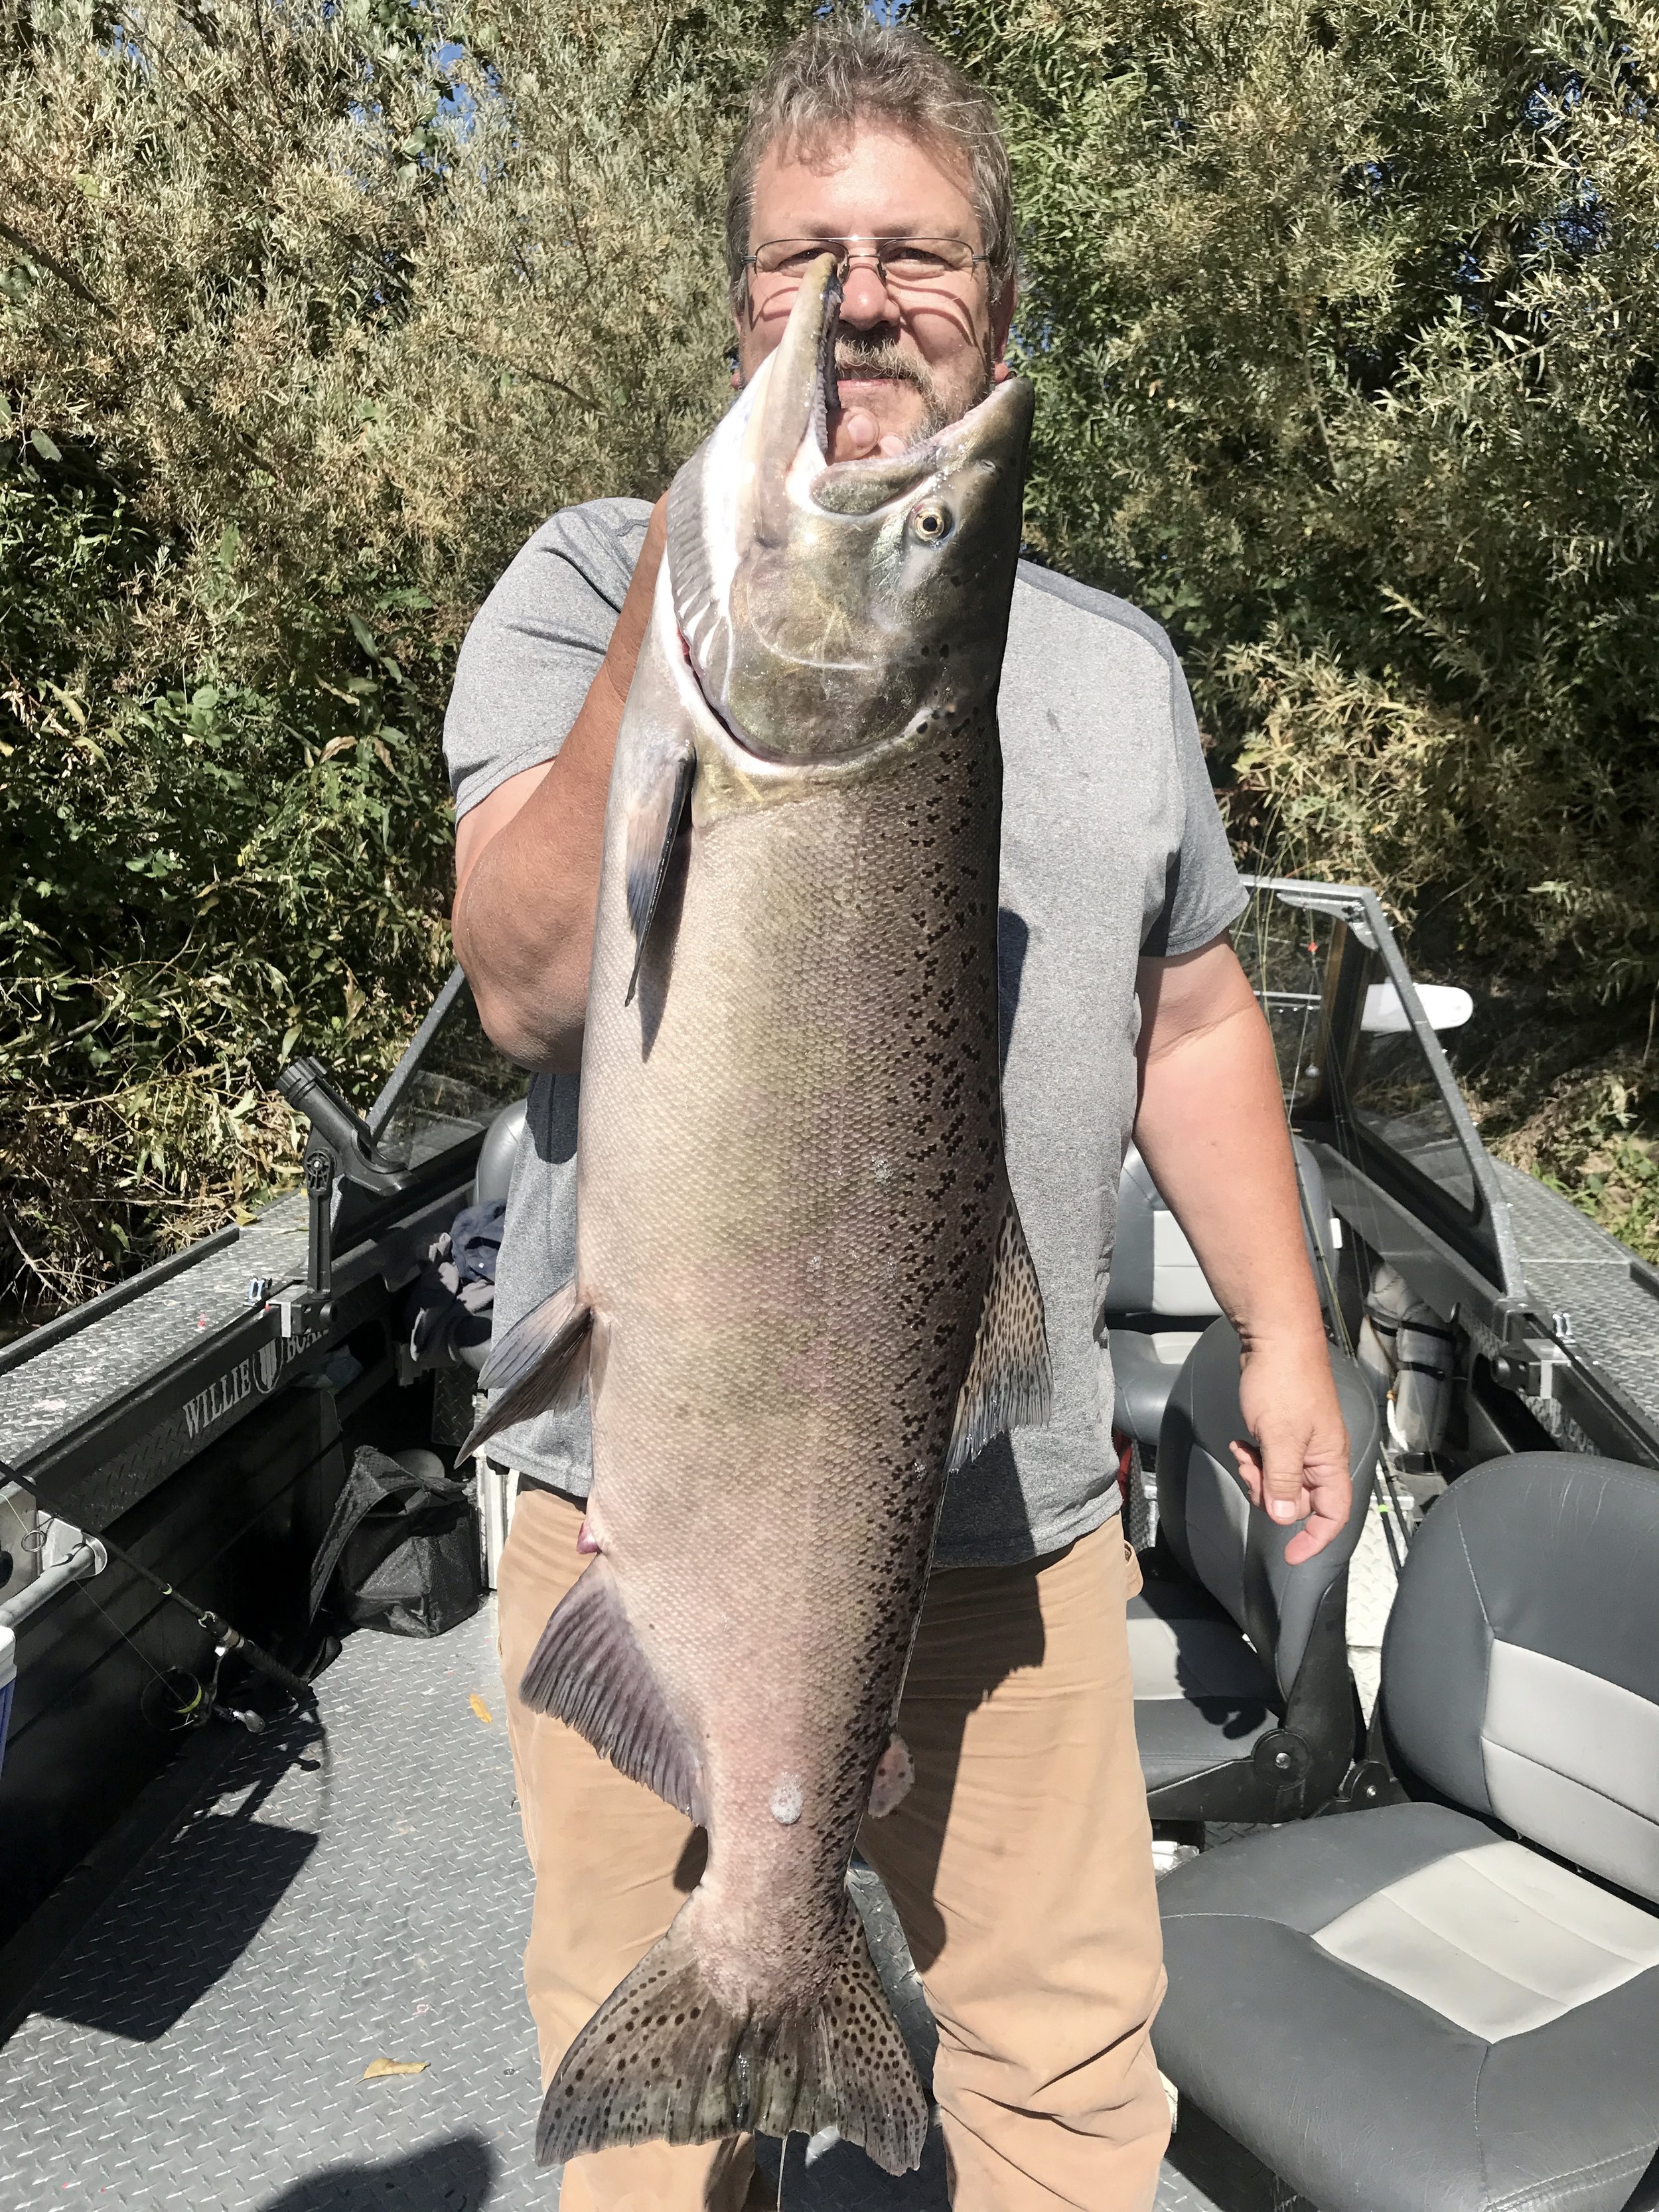 Blog — Fishing Report — Jeff Goodwin Fishing